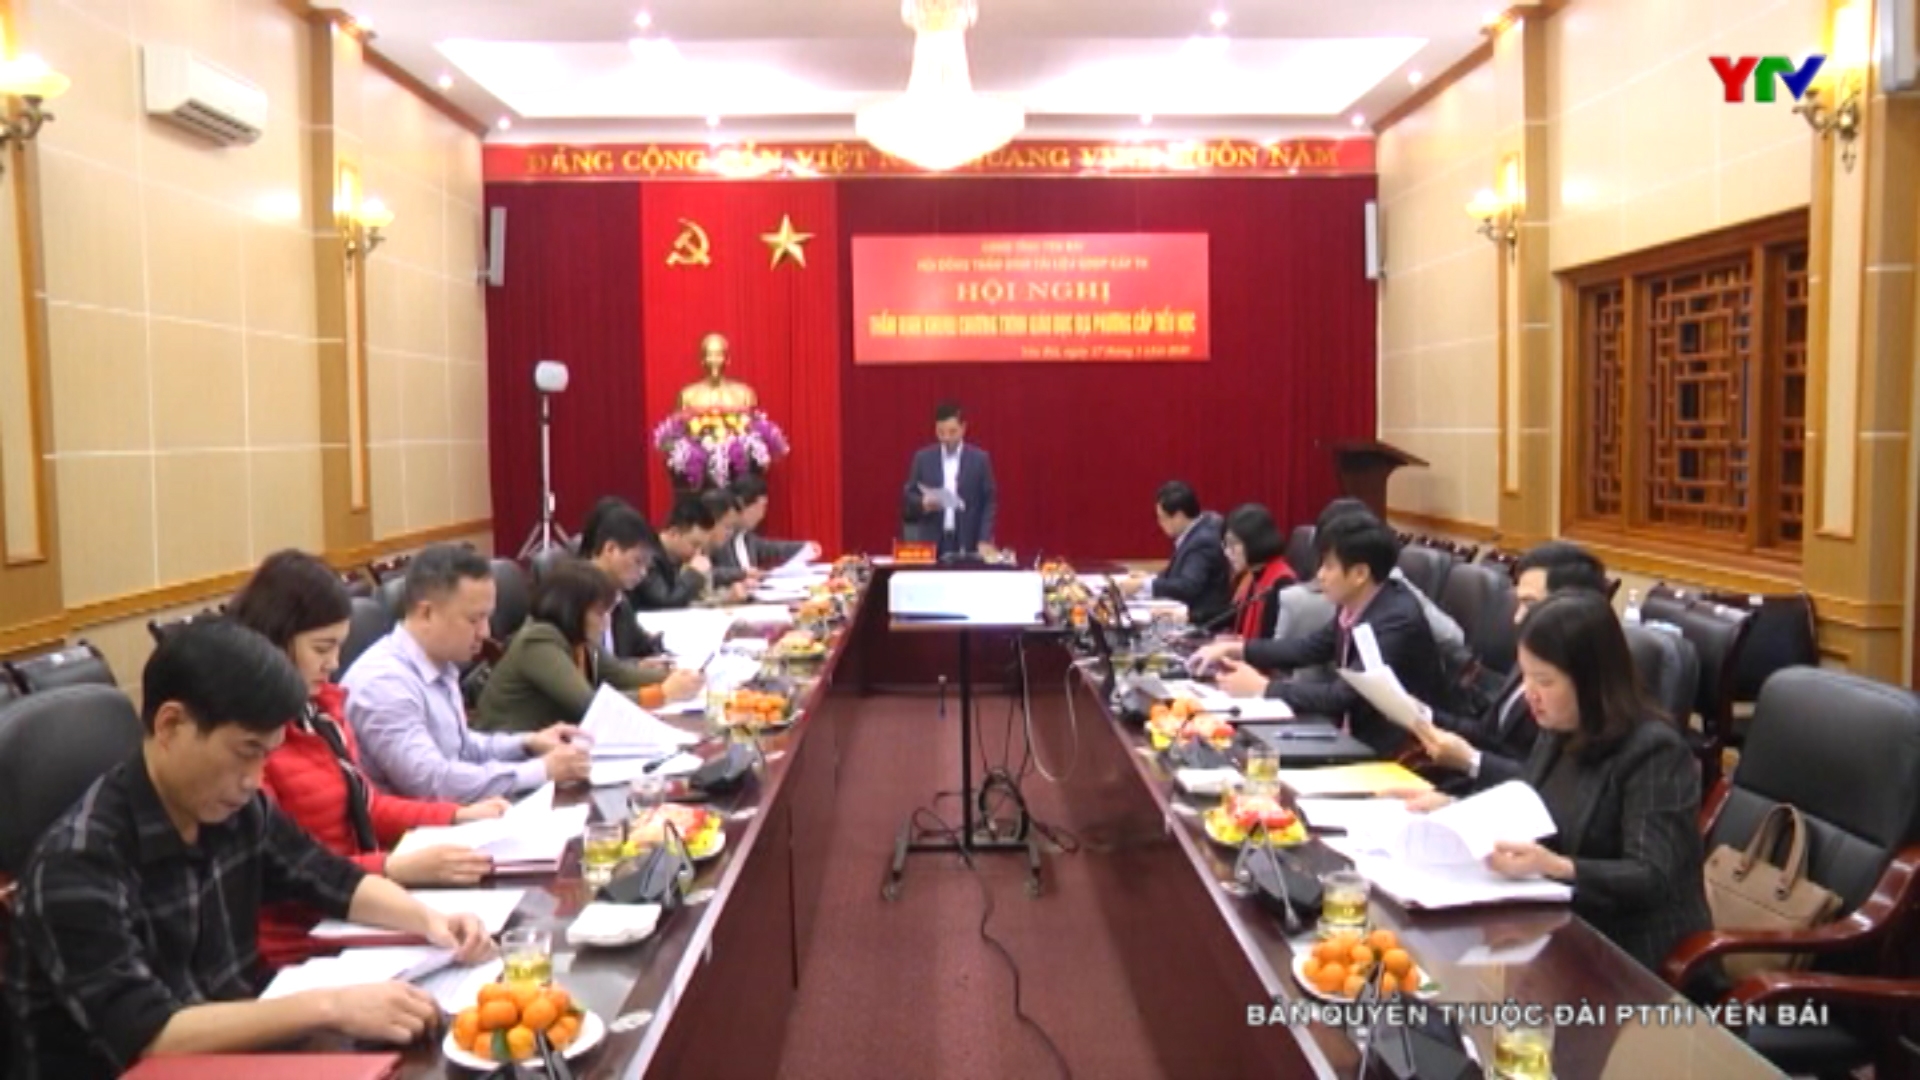 Hội nghị thẩm định chương trình giáo dục địa phương cấp tiểu học tỉnh Yên Bái